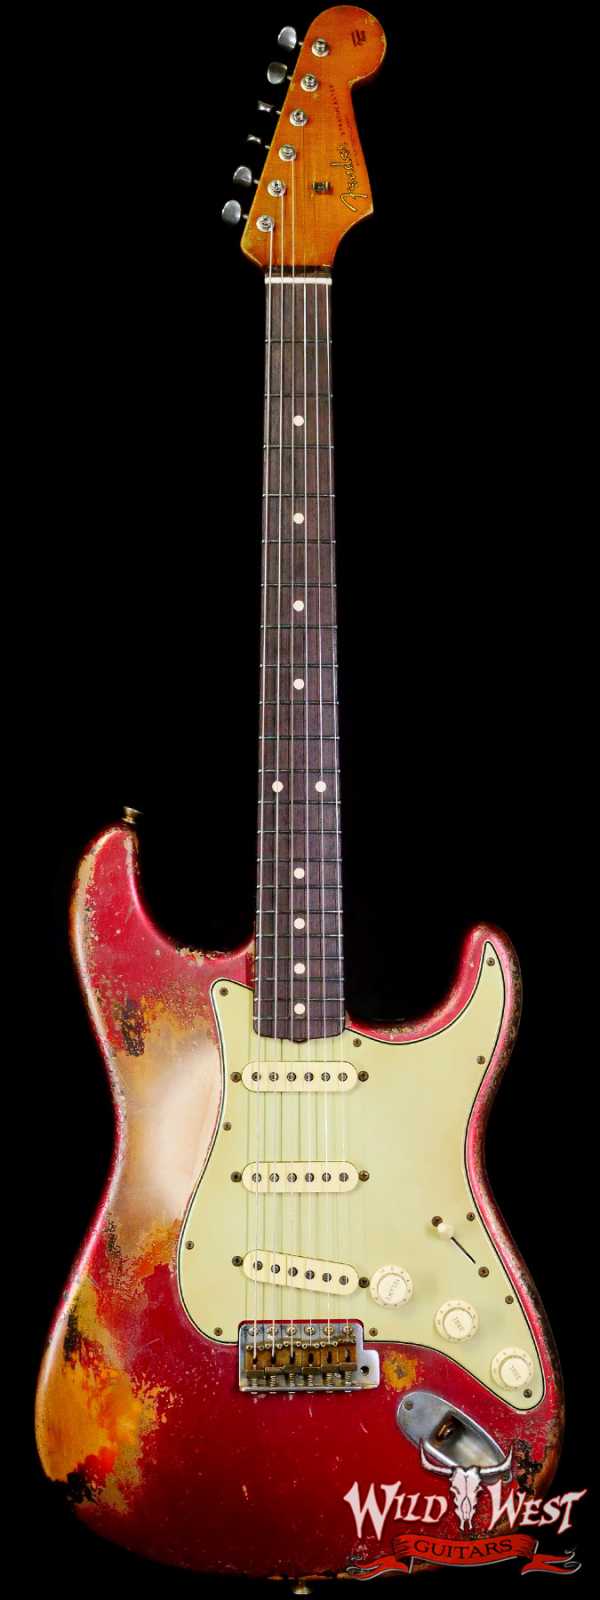 Fender Custom Shop Vincent Van Trigt Masterbuilt 1962 Stratocaster Heavy Relic Candy Apple Red over 3 Tone Sunburst